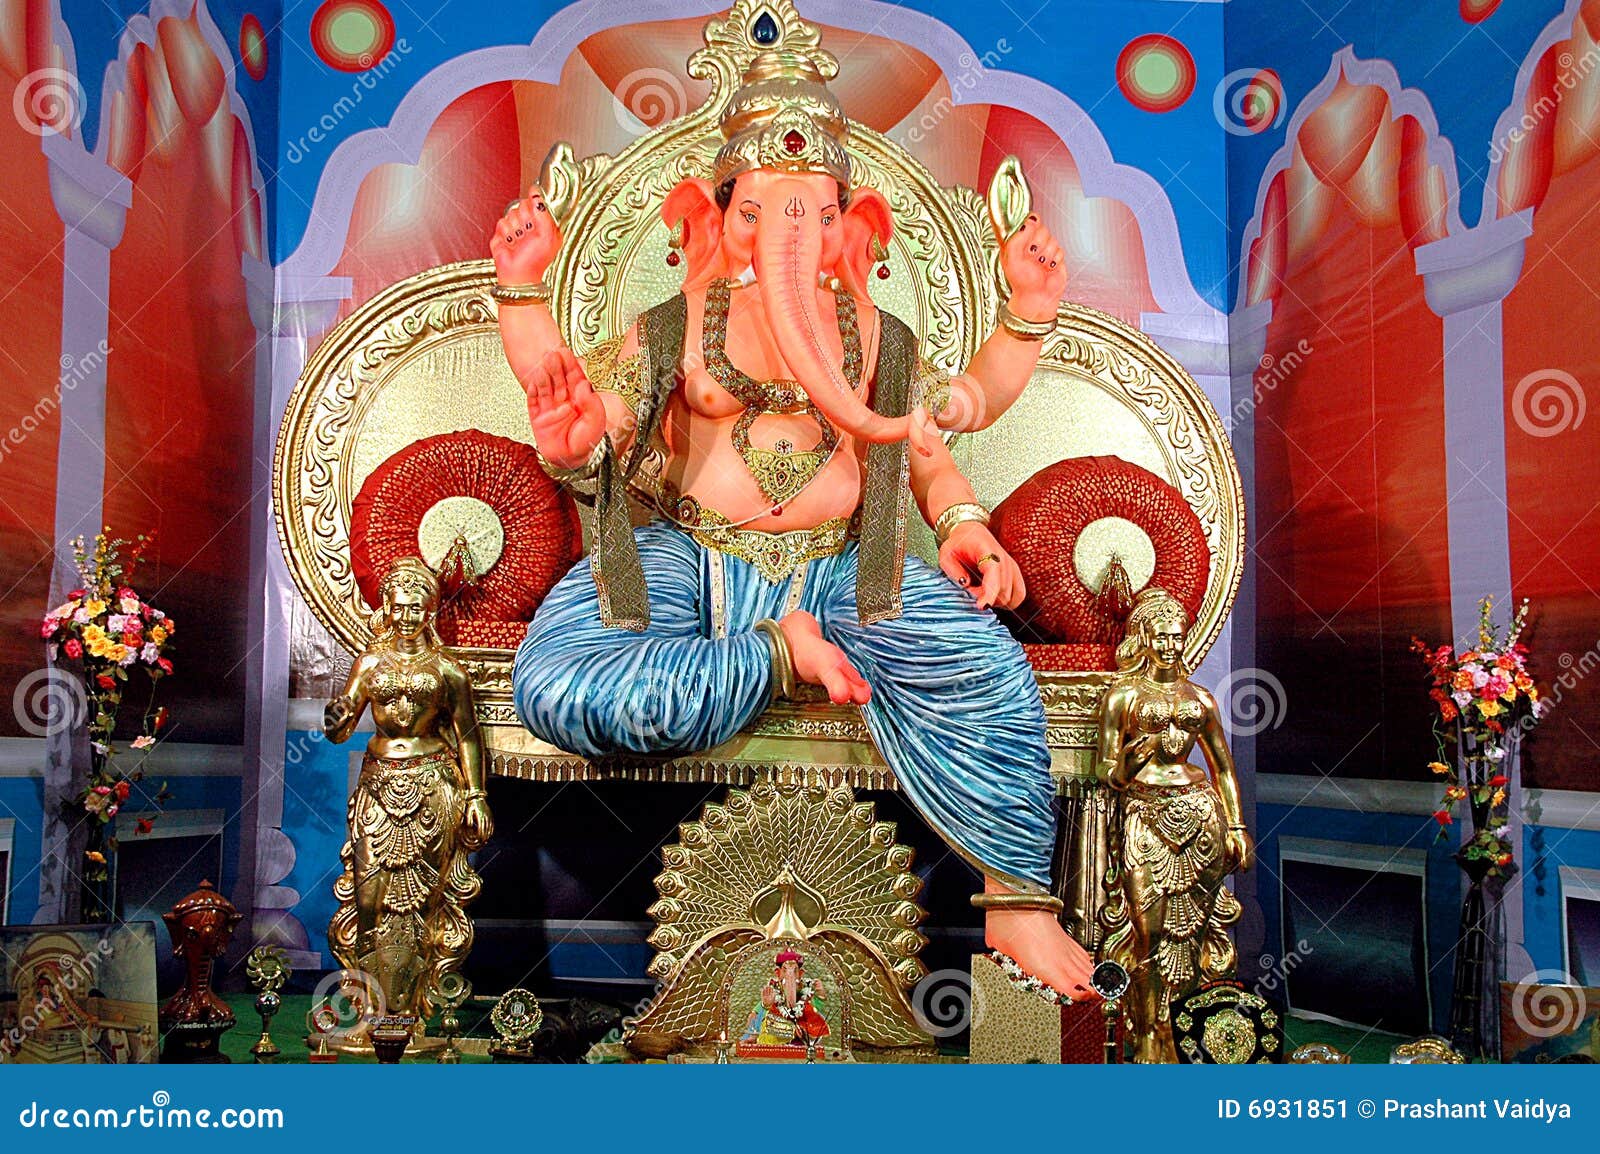 Lord ganesha stock image. Image of hindu, colors, lord - 6931851